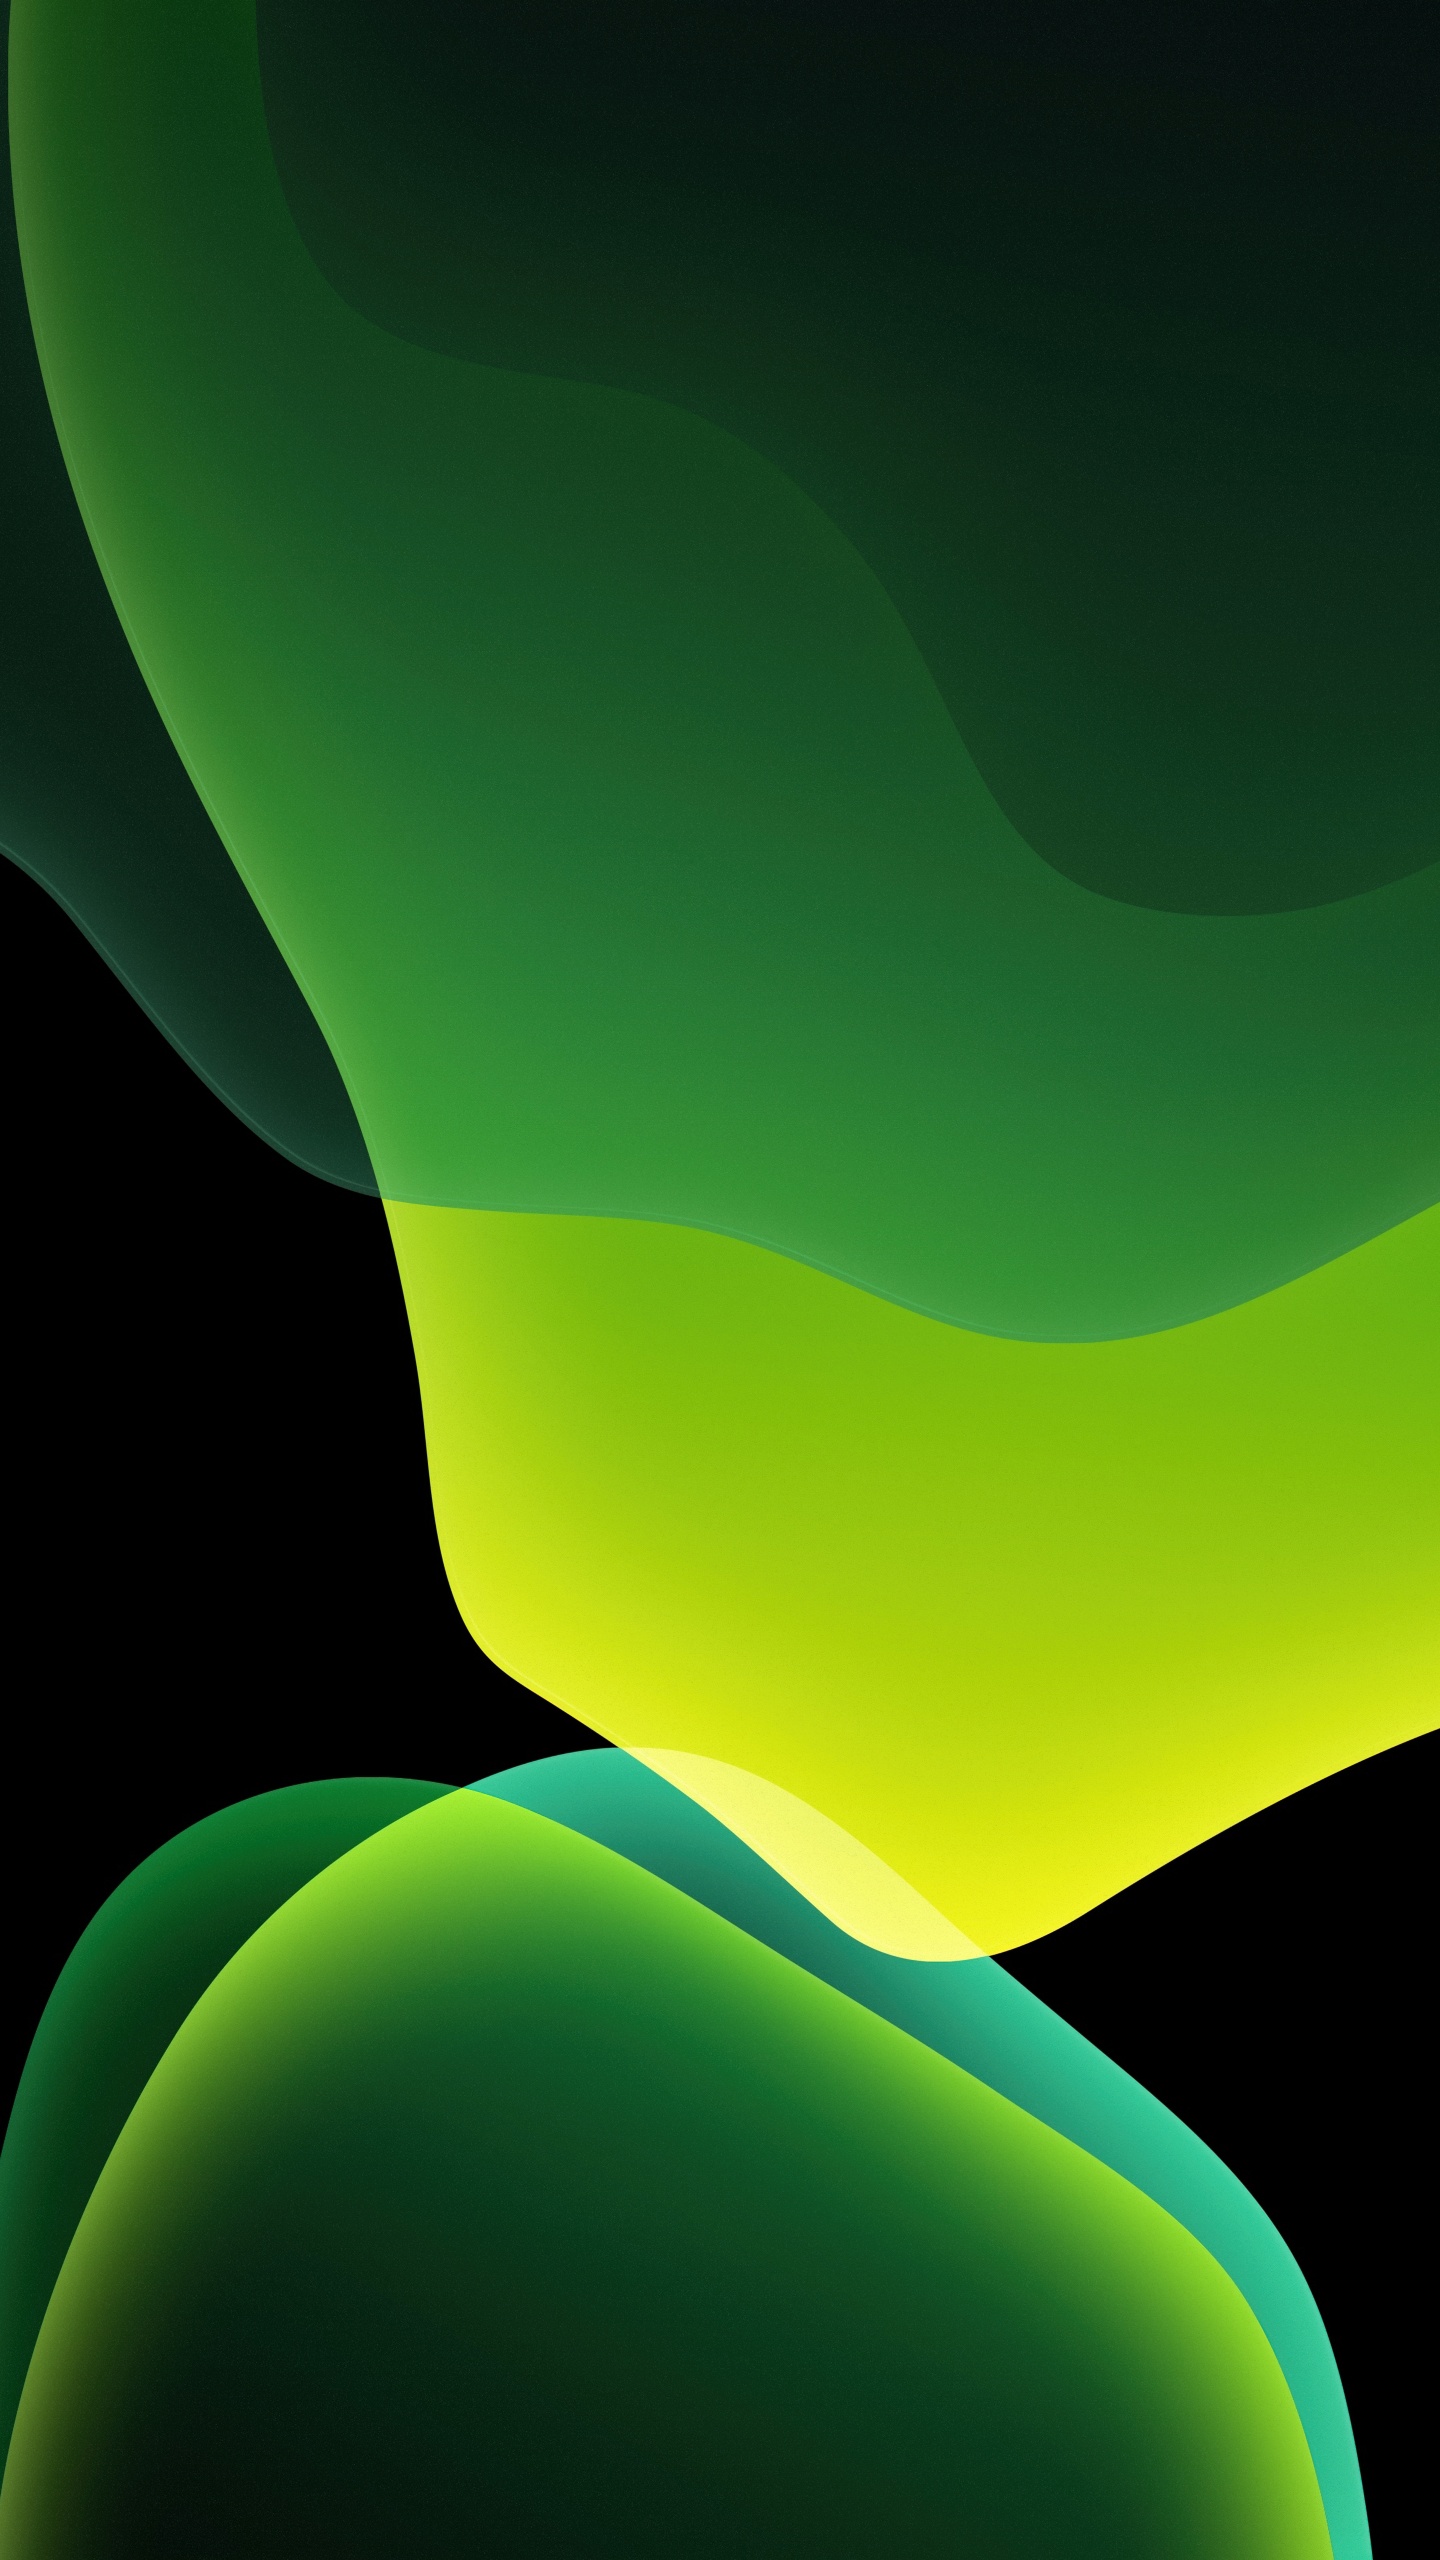 Tấm hình nền Green của iOS 13 sẽ khiến bạn tràn đầy năng lượng với màu xanh tươi sáng, sẵn sàng để tạo cho bạn một ngày mới tràn đầy cảm hứng. 